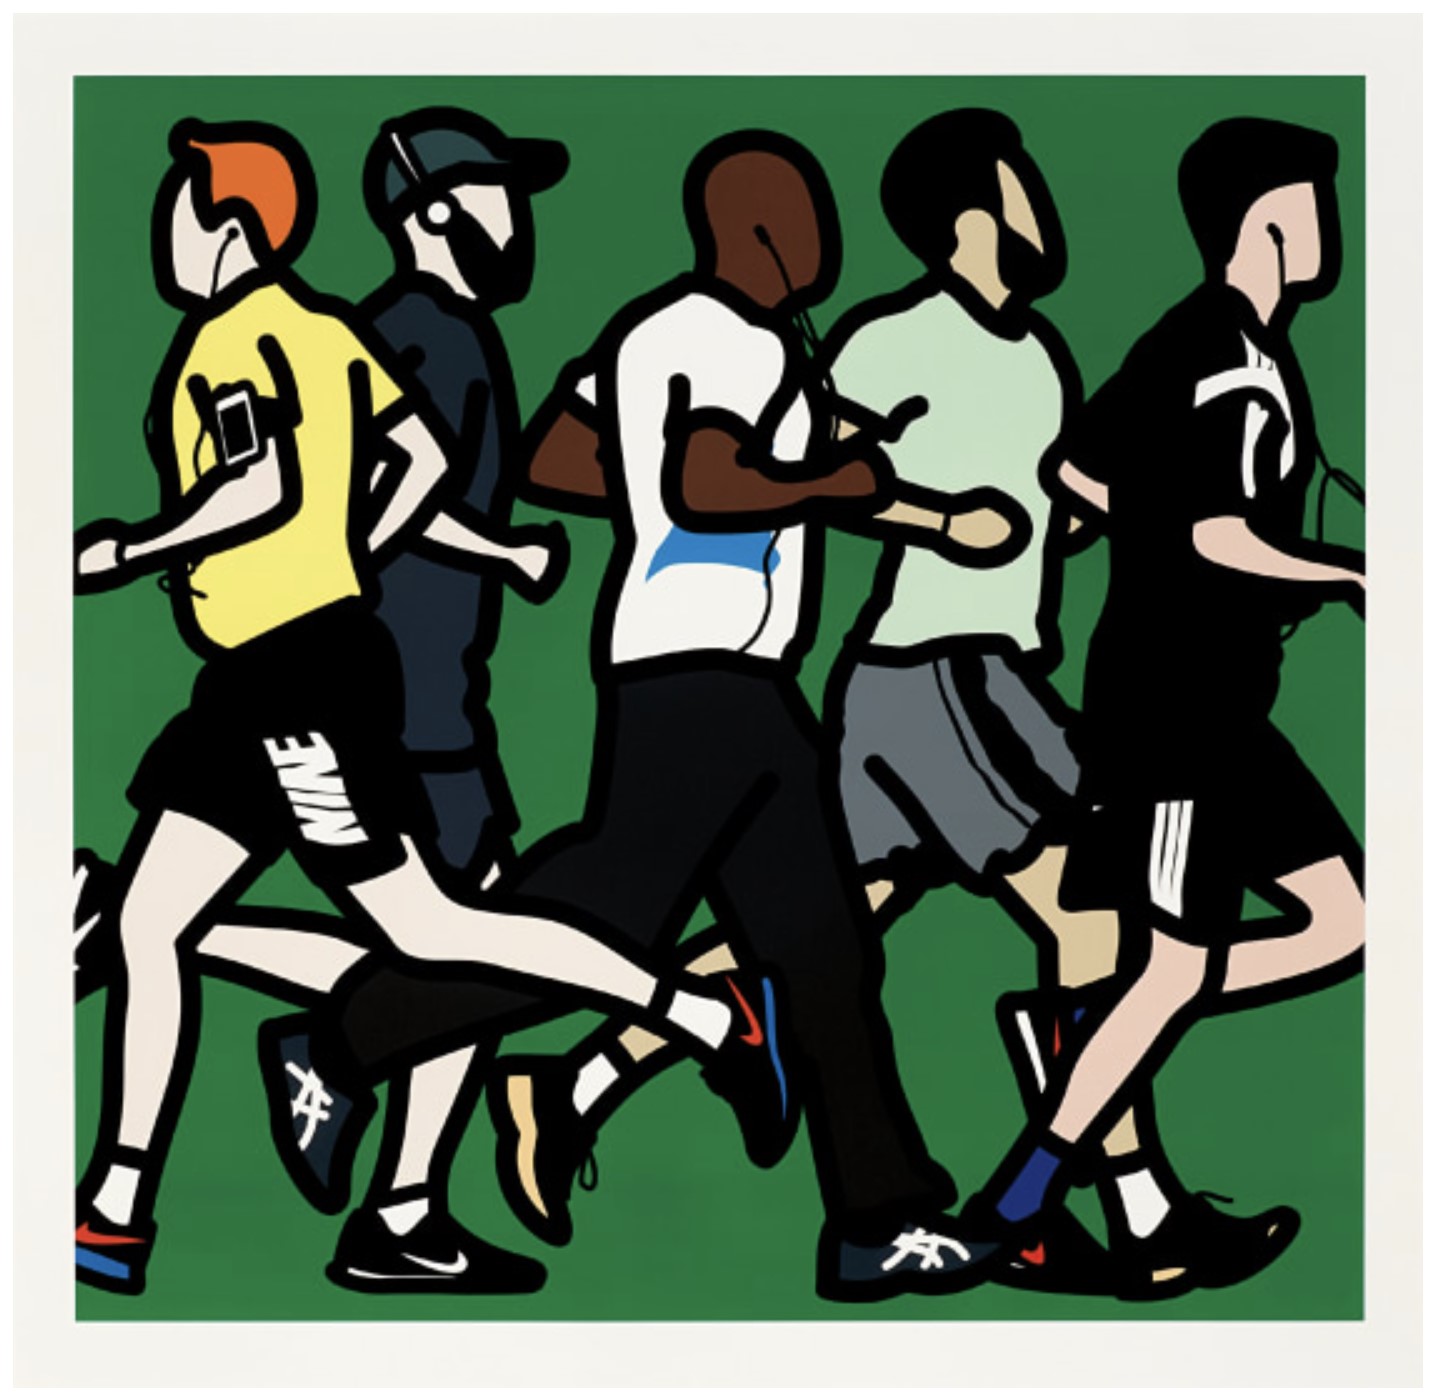 Julian Opie - Running Men, from Runners